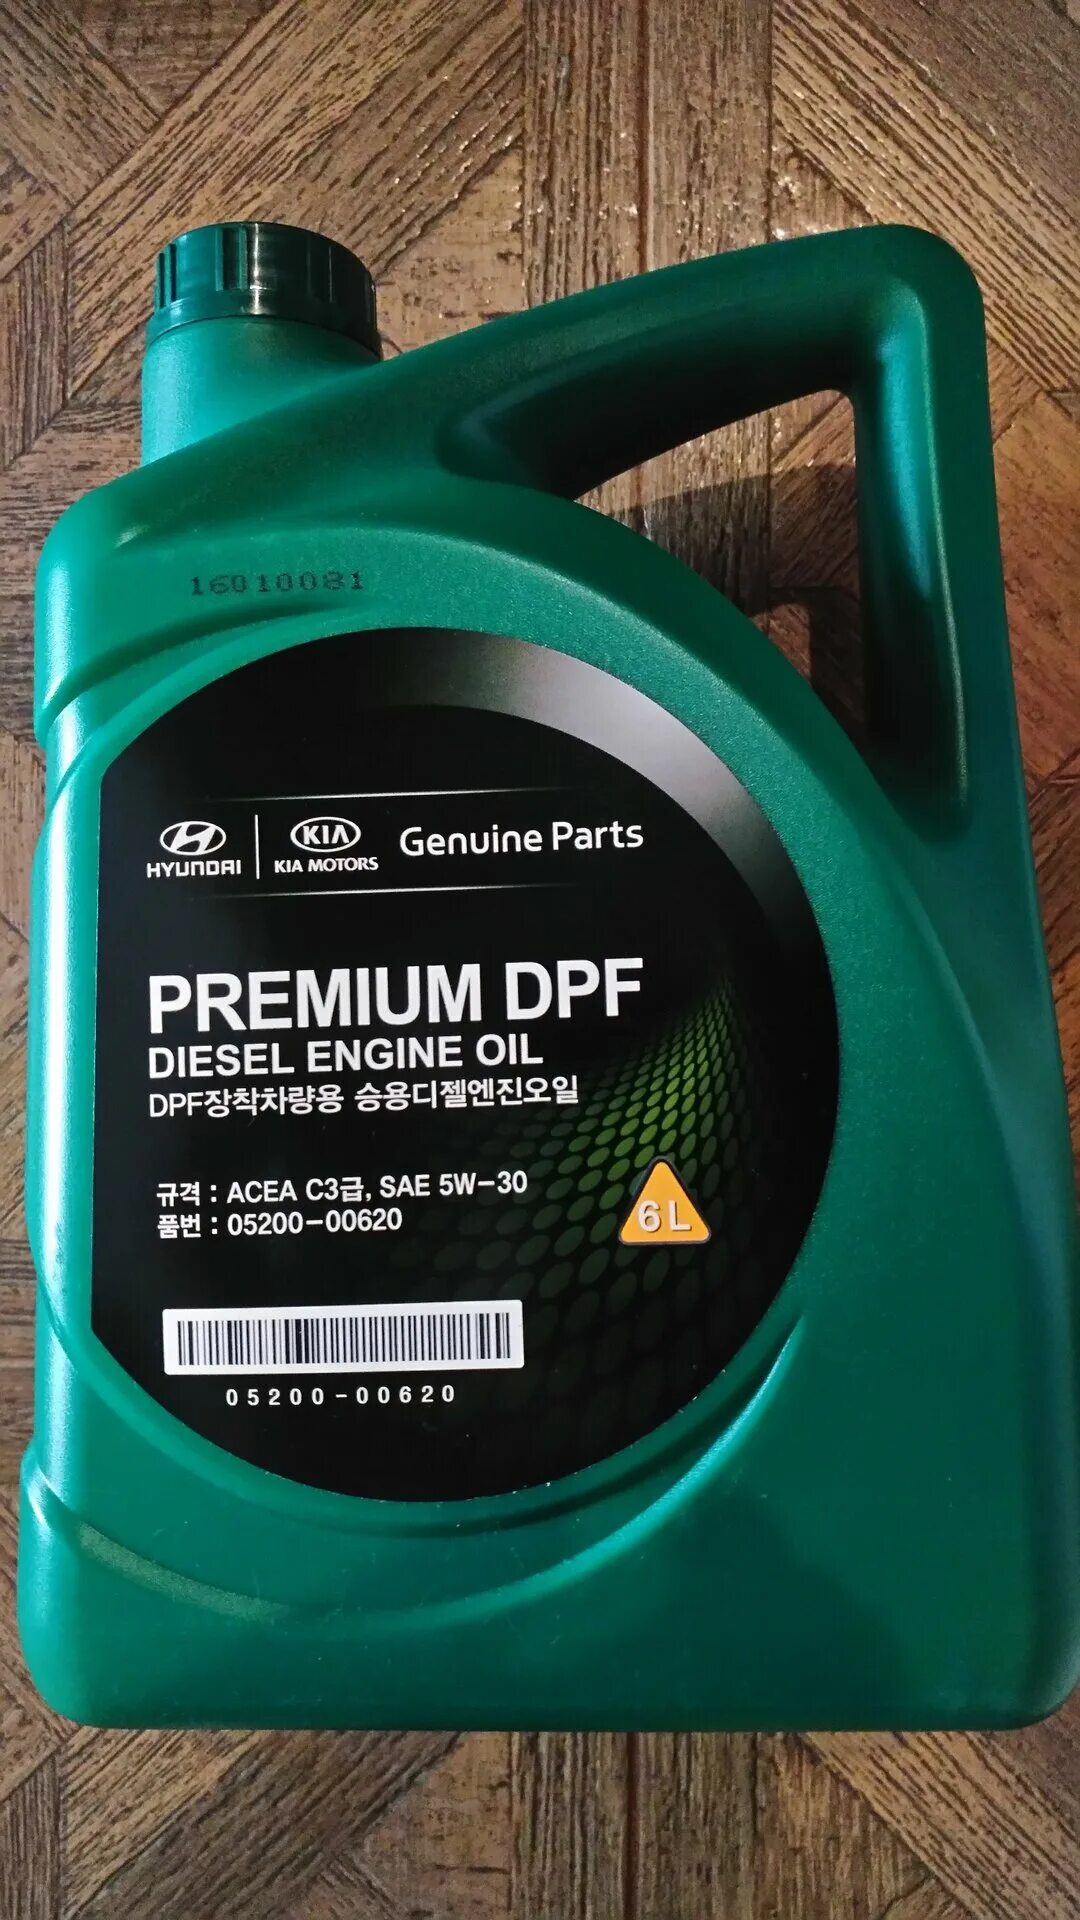 Масло kia premium dpf diesel. Premium DPF Diesel 5w-30. Масло mobis Premium DPF Diesel 5w-30. Hyundai Kia Premium DPF 5w-30 6 л. Mobis Premium DPF Diesel 5w-30, 6 n.